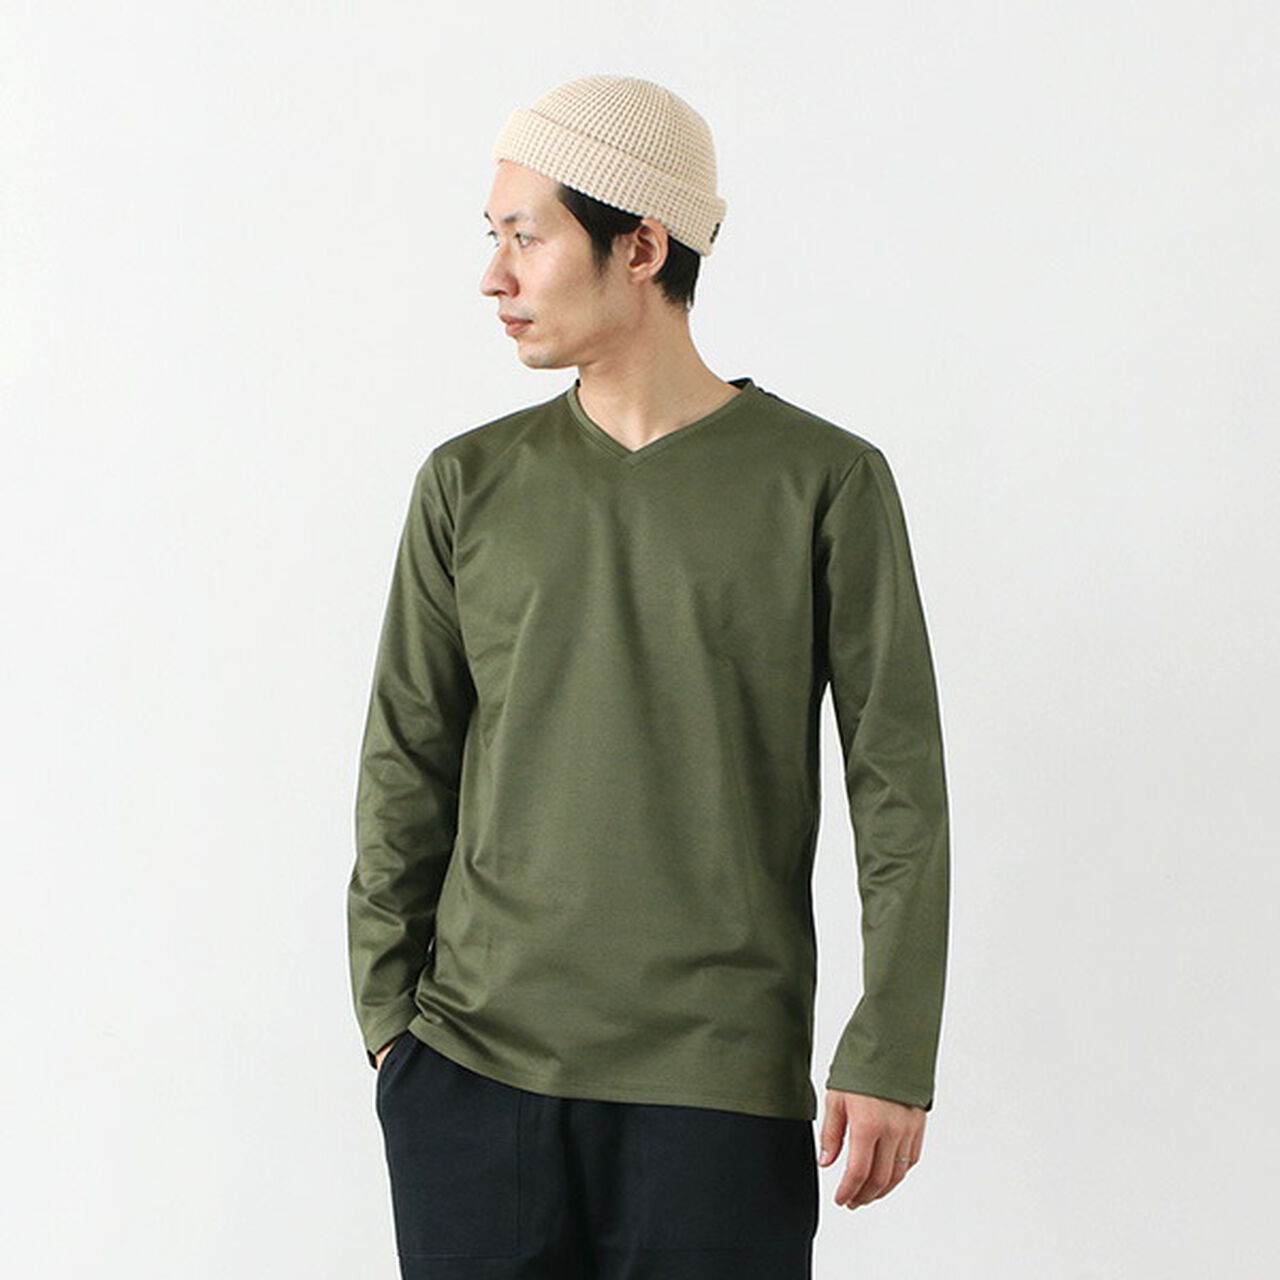 Tokyo Made V-Neck Long Sleeve Dress T-Shirt,Olive, large image number 0